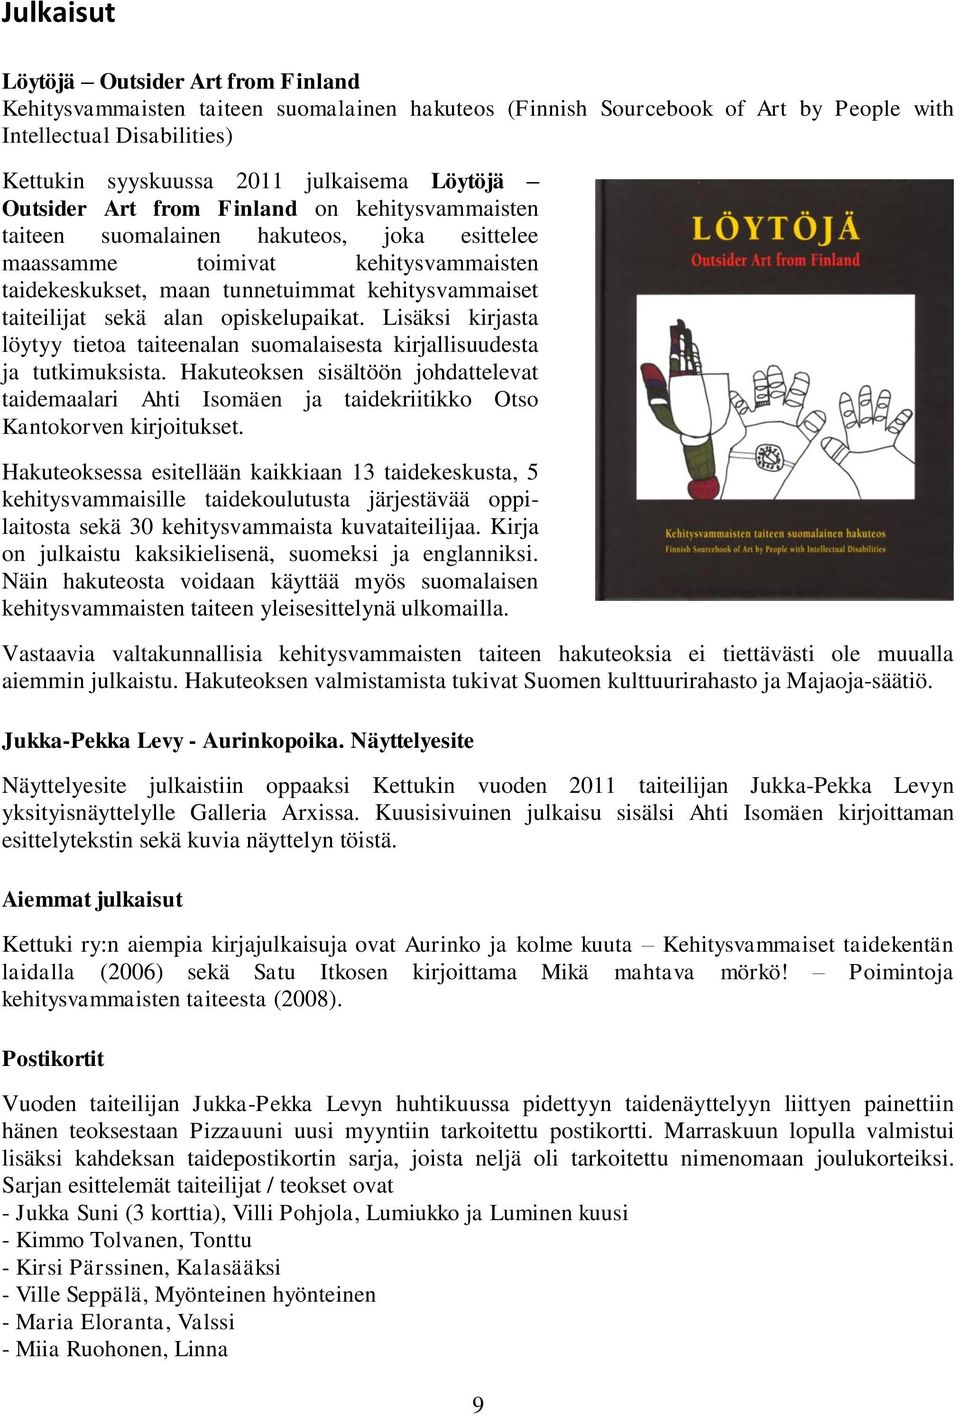 sekä alan opiskelupaikat. Lisäksi kirjasta löytyy tietoa taiteenalan suomalaisesta kirjallisuudesta ja tutkimuksista.